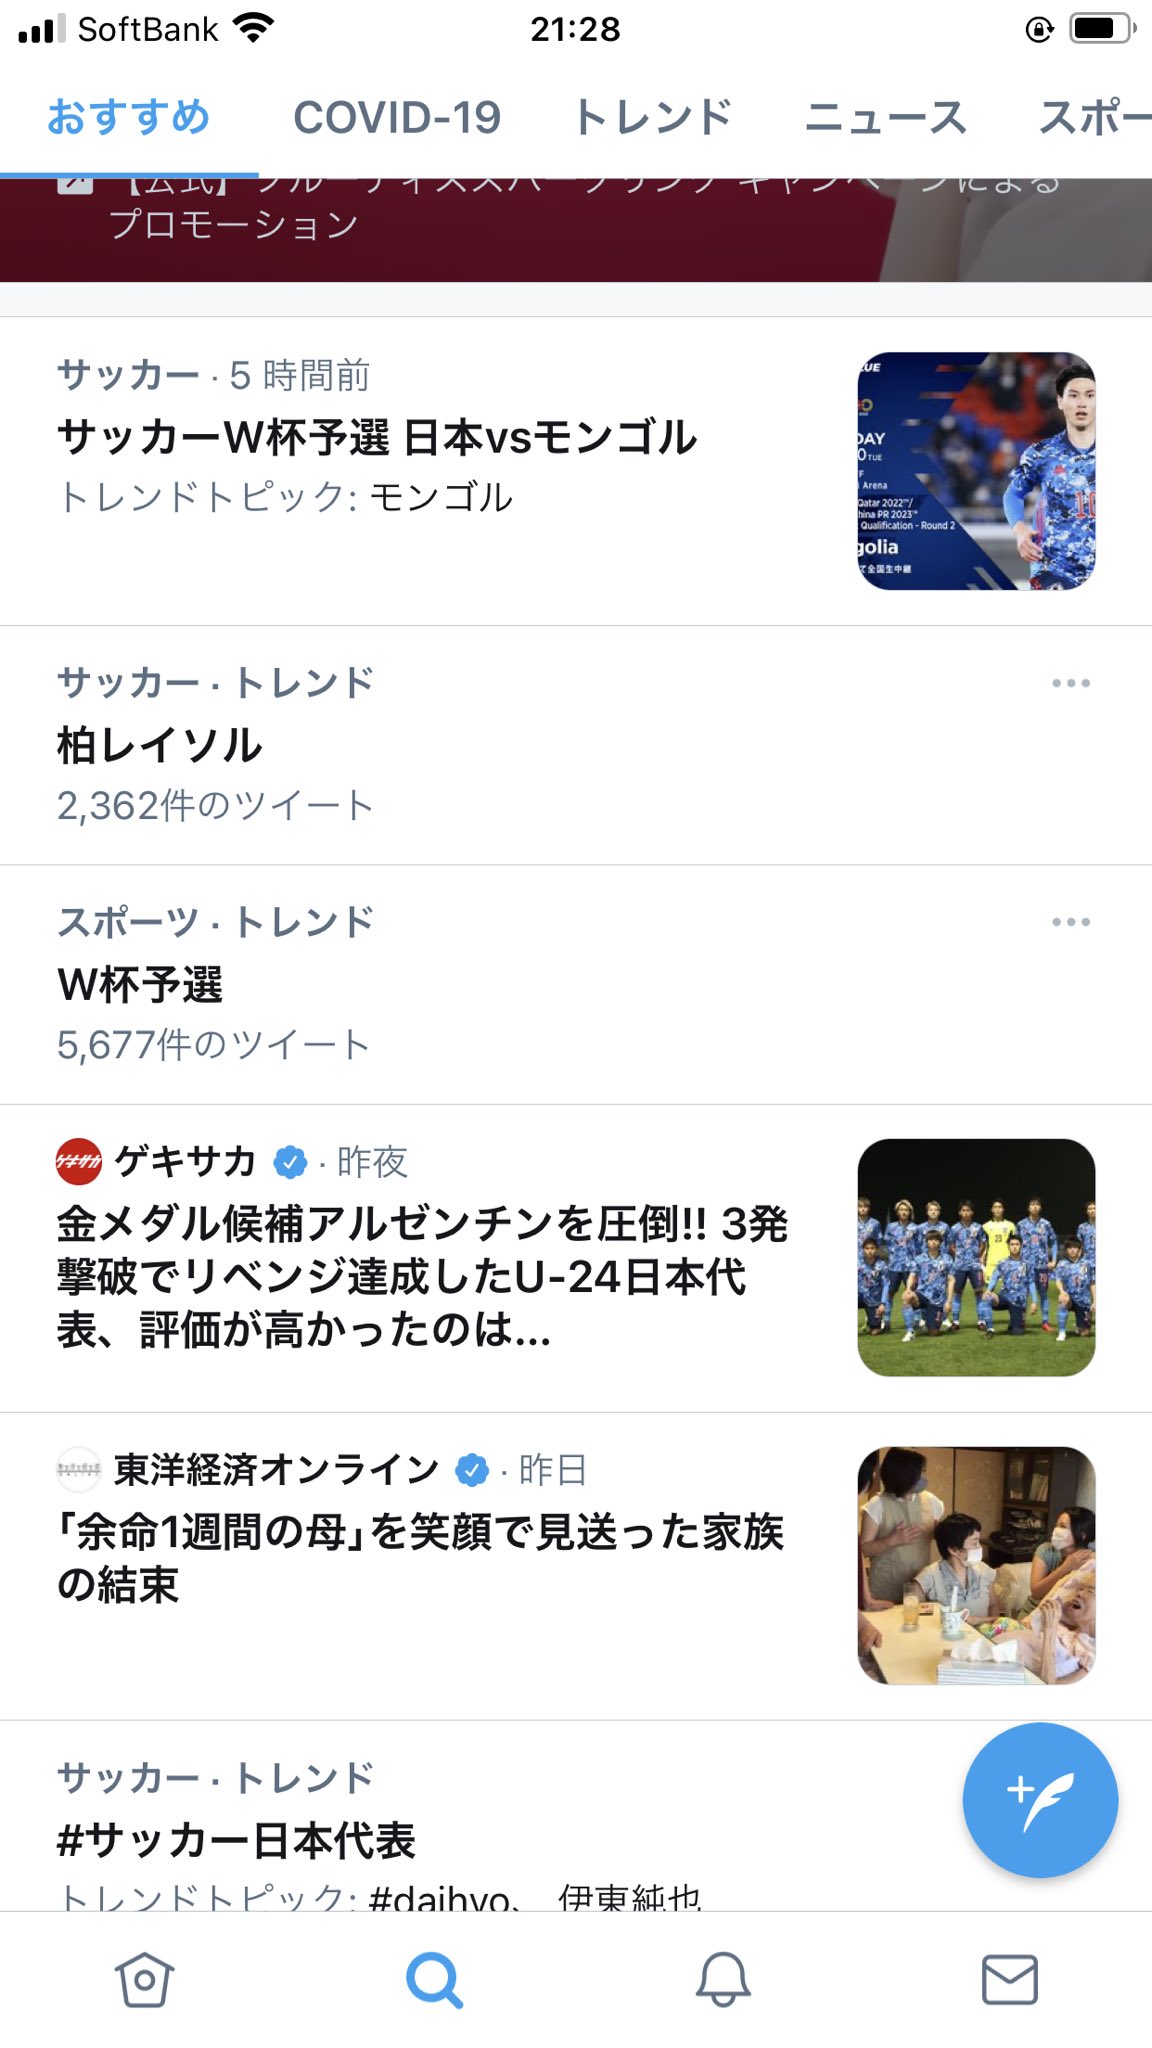 サッカー日本代表 モンゴル相手に14 0で圧勝 伝説の柏レイソルvs京都サンガf C 戦を超えたと話題に 秒刊sunday